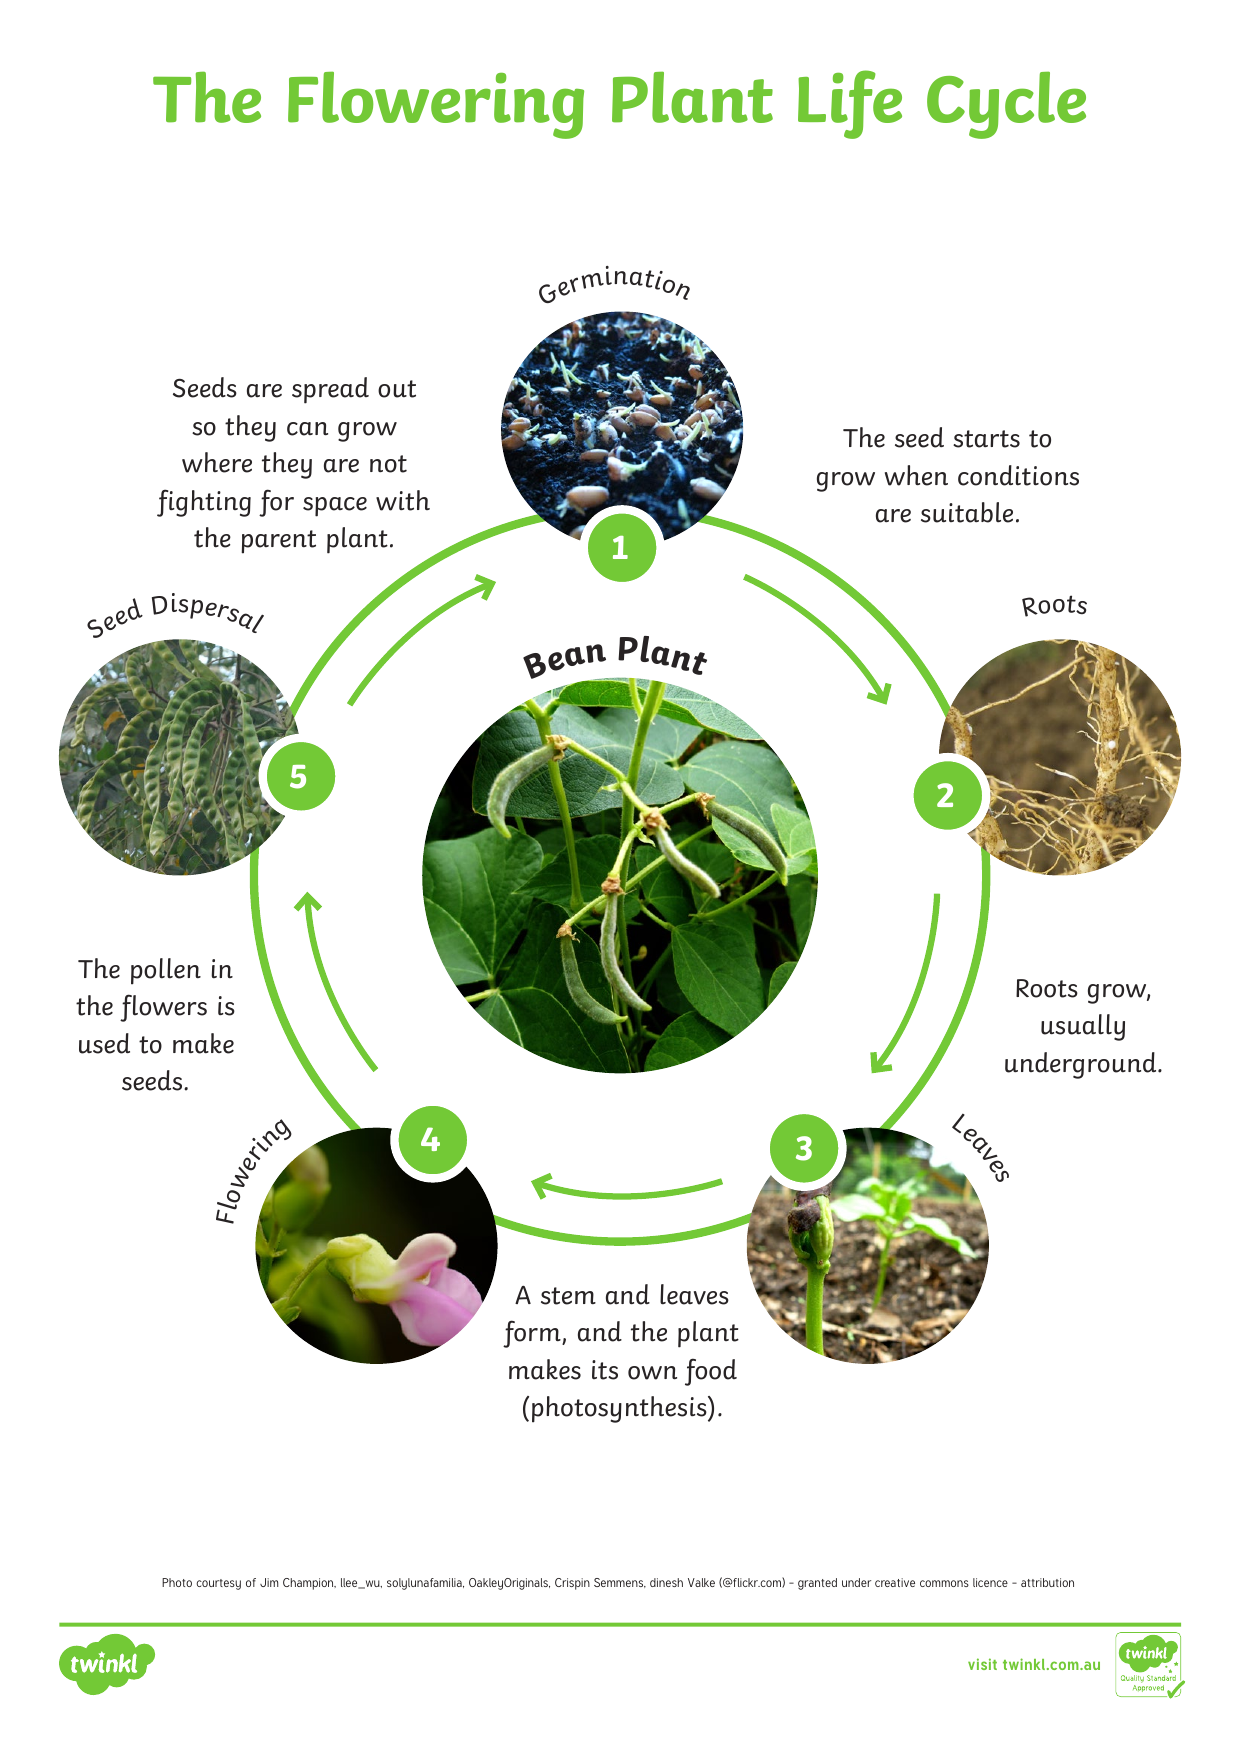 9 Life Cycle Of Flowering Plants Task 1 Rosiekaydan